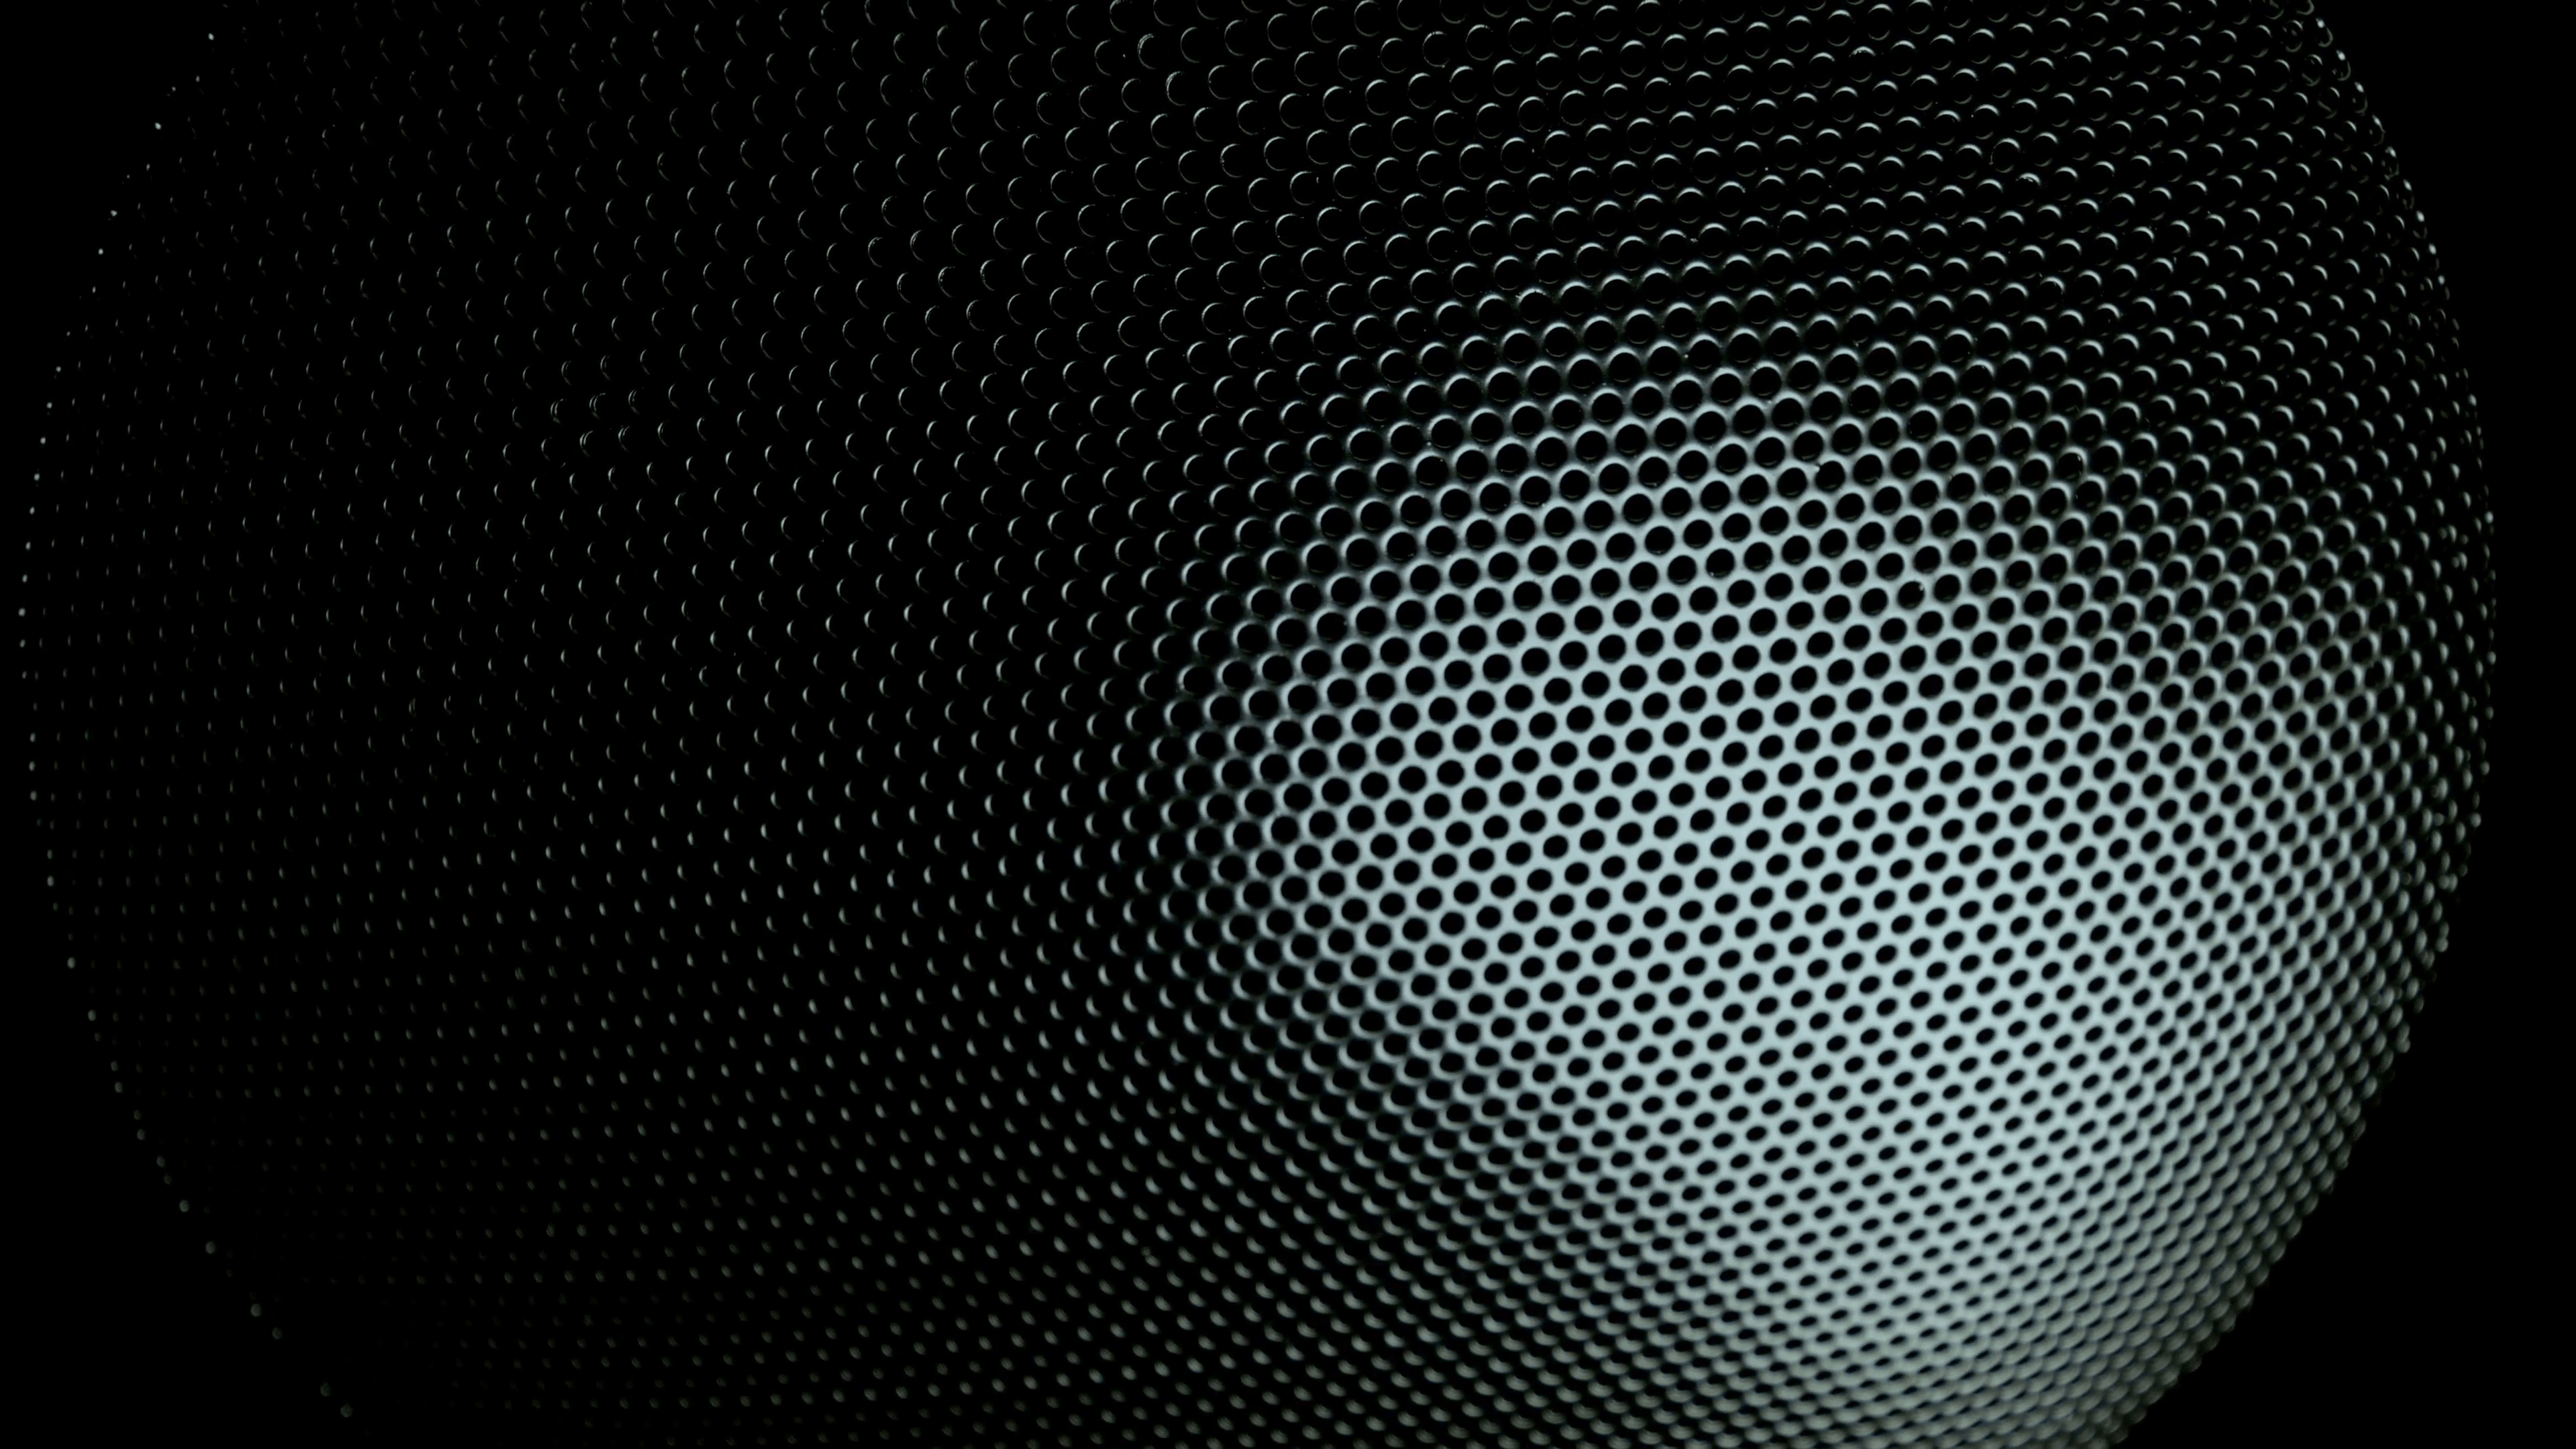 Metallic grid motion background. Dark metal background